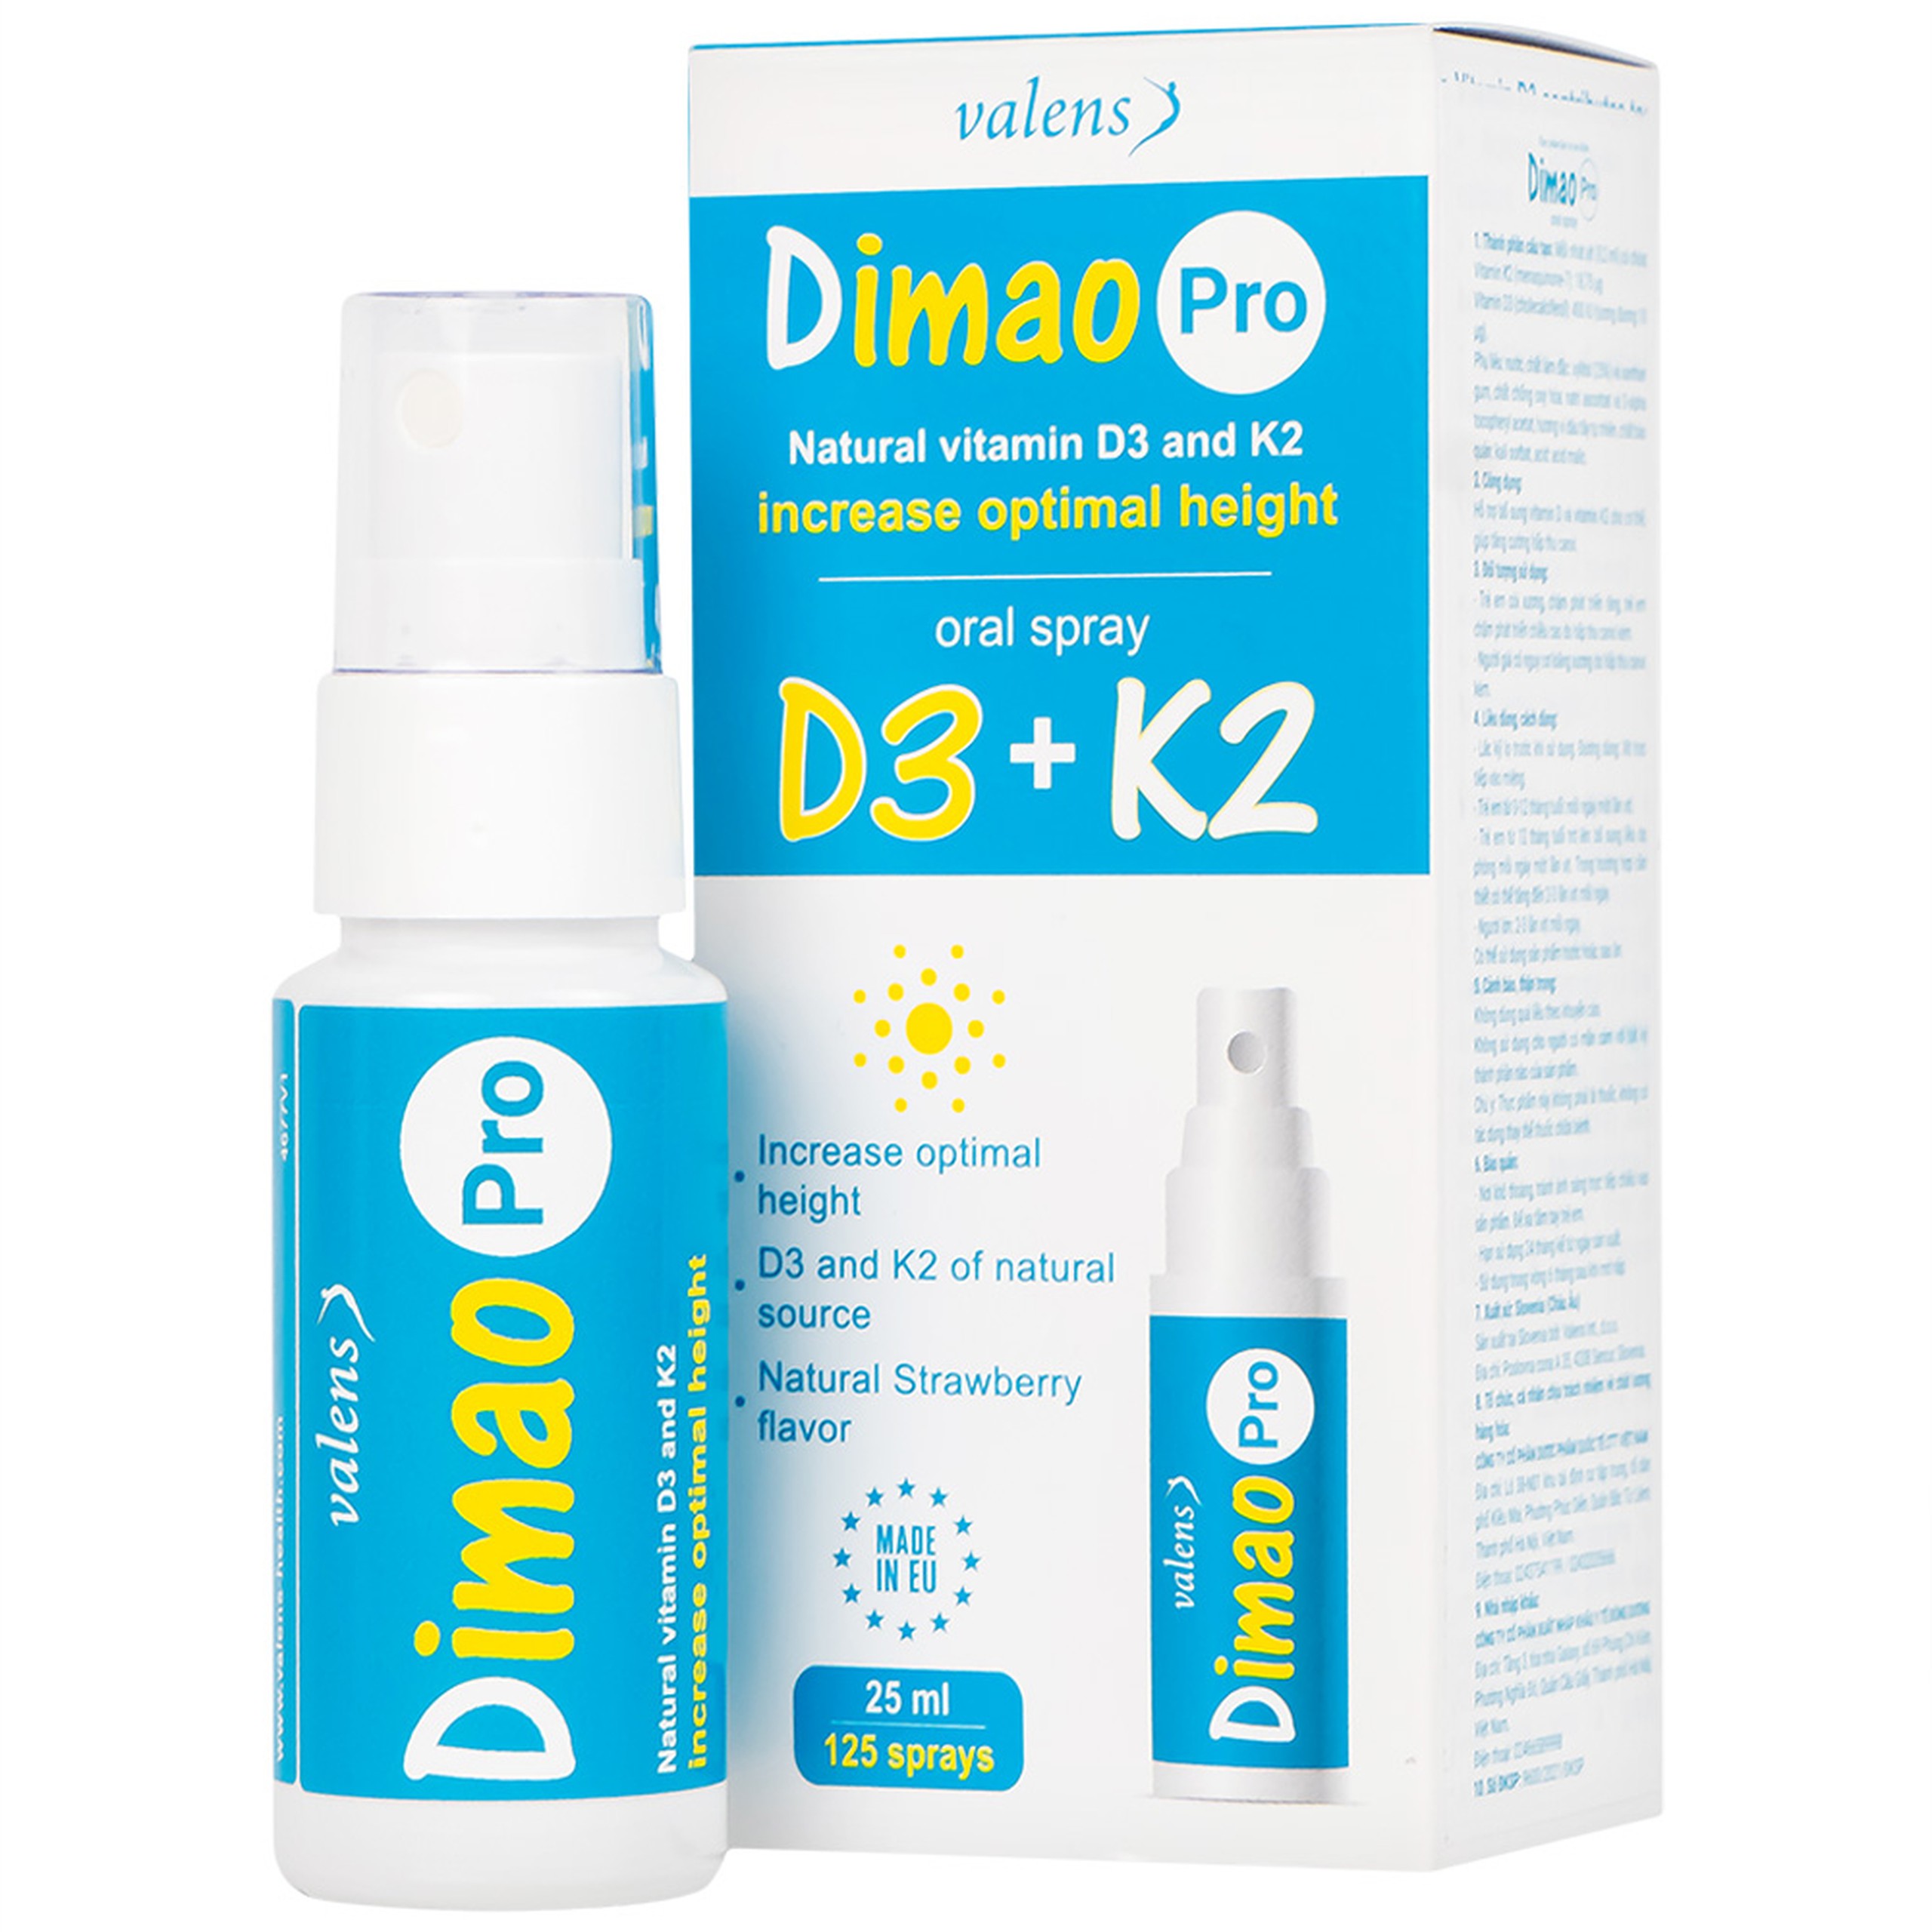 Xịt họng Dimao Pro Oral Spray D3 + K2 hỗ trợ bổ sung vitamin D và vitamin K2 cho cơ thể (25ml)